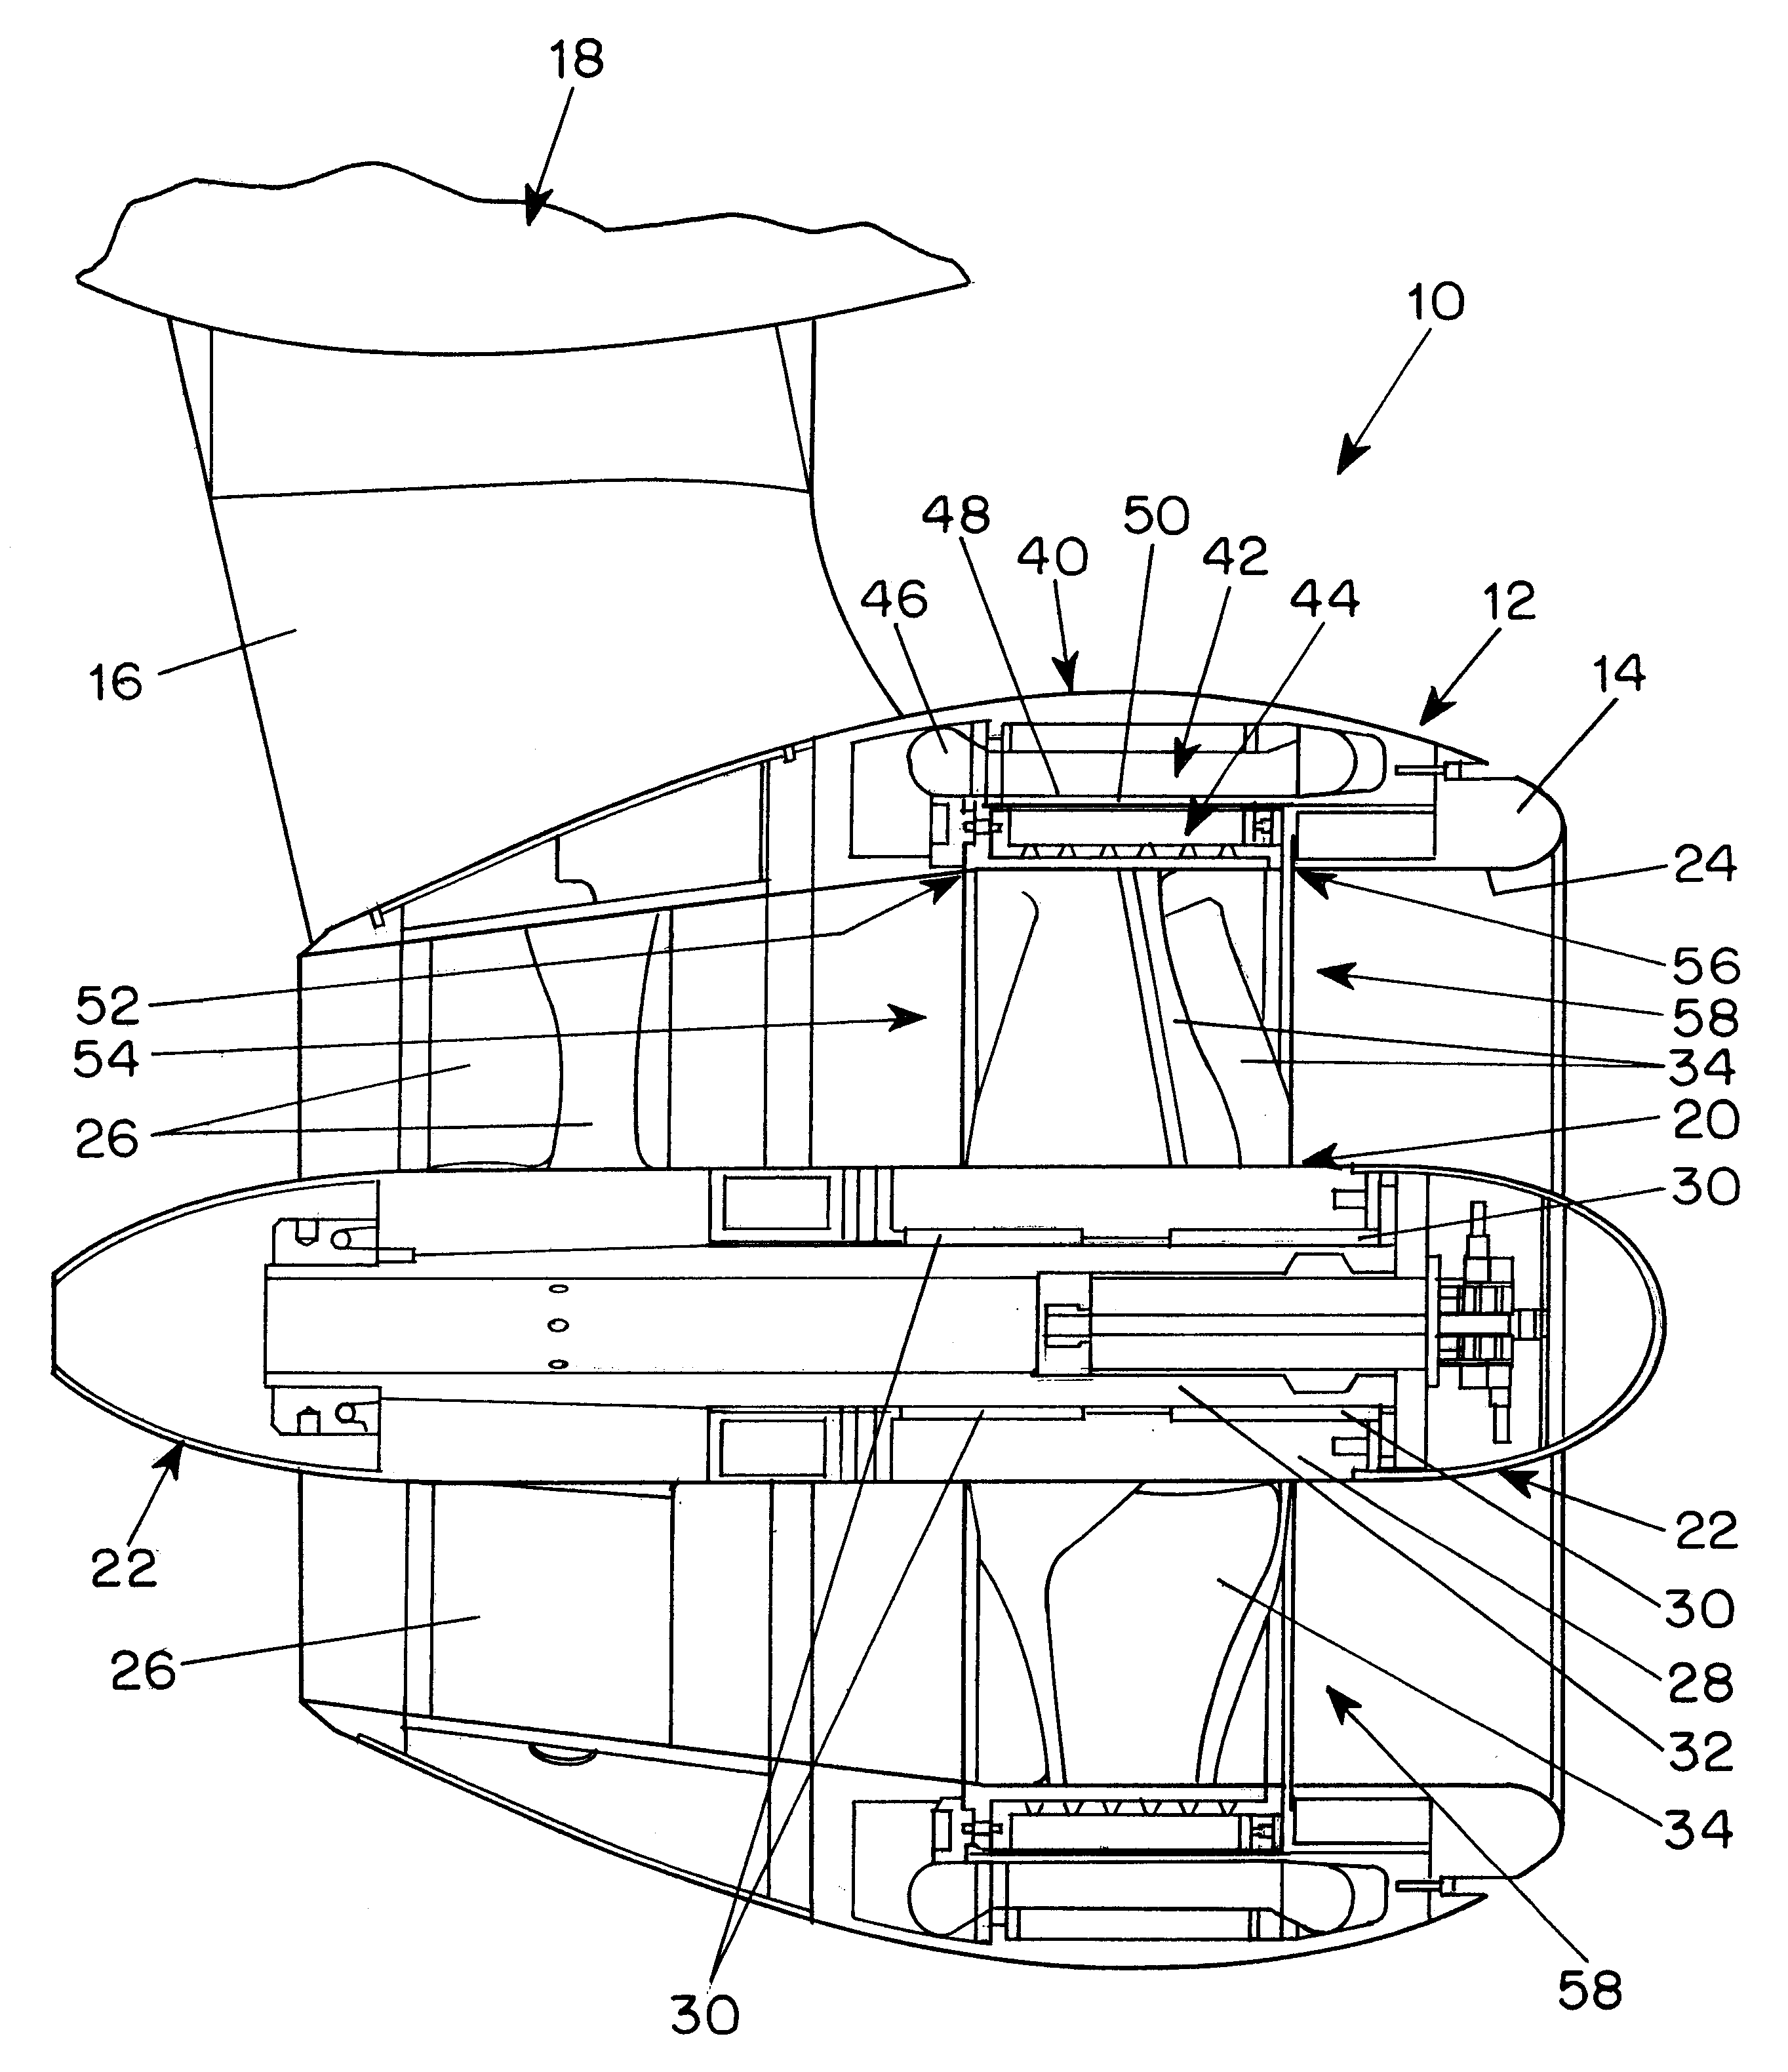 Rim-driven propulsion pod arrangement